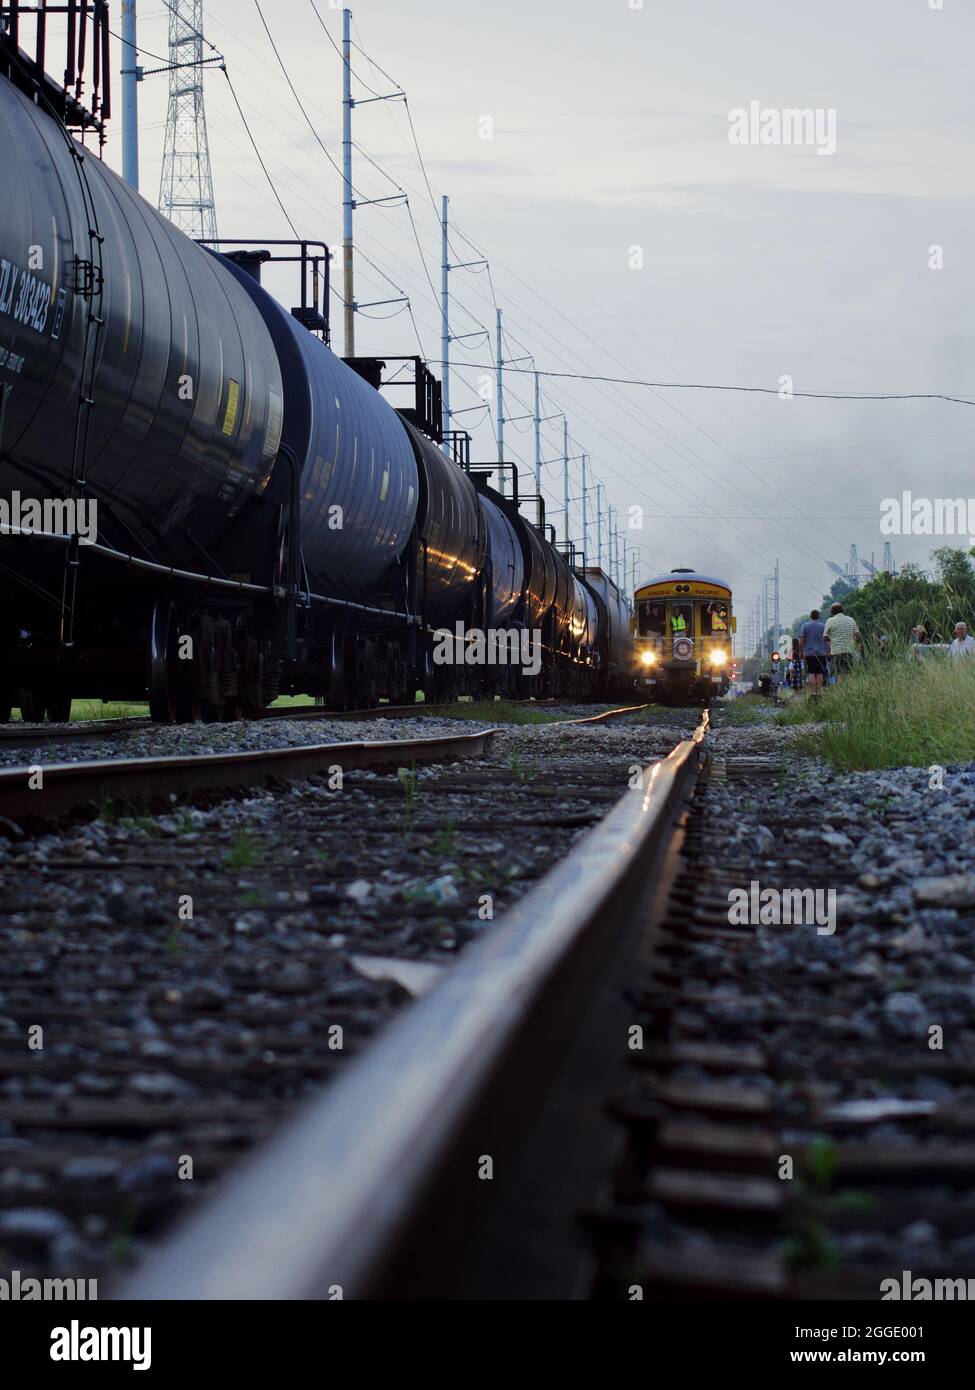 NEW ORLEANS, STATI UNITI - 20 agosto 2021: L'Union Pacific 4014, soprannominata Big Boy, entra a New Orleans Foto Stock